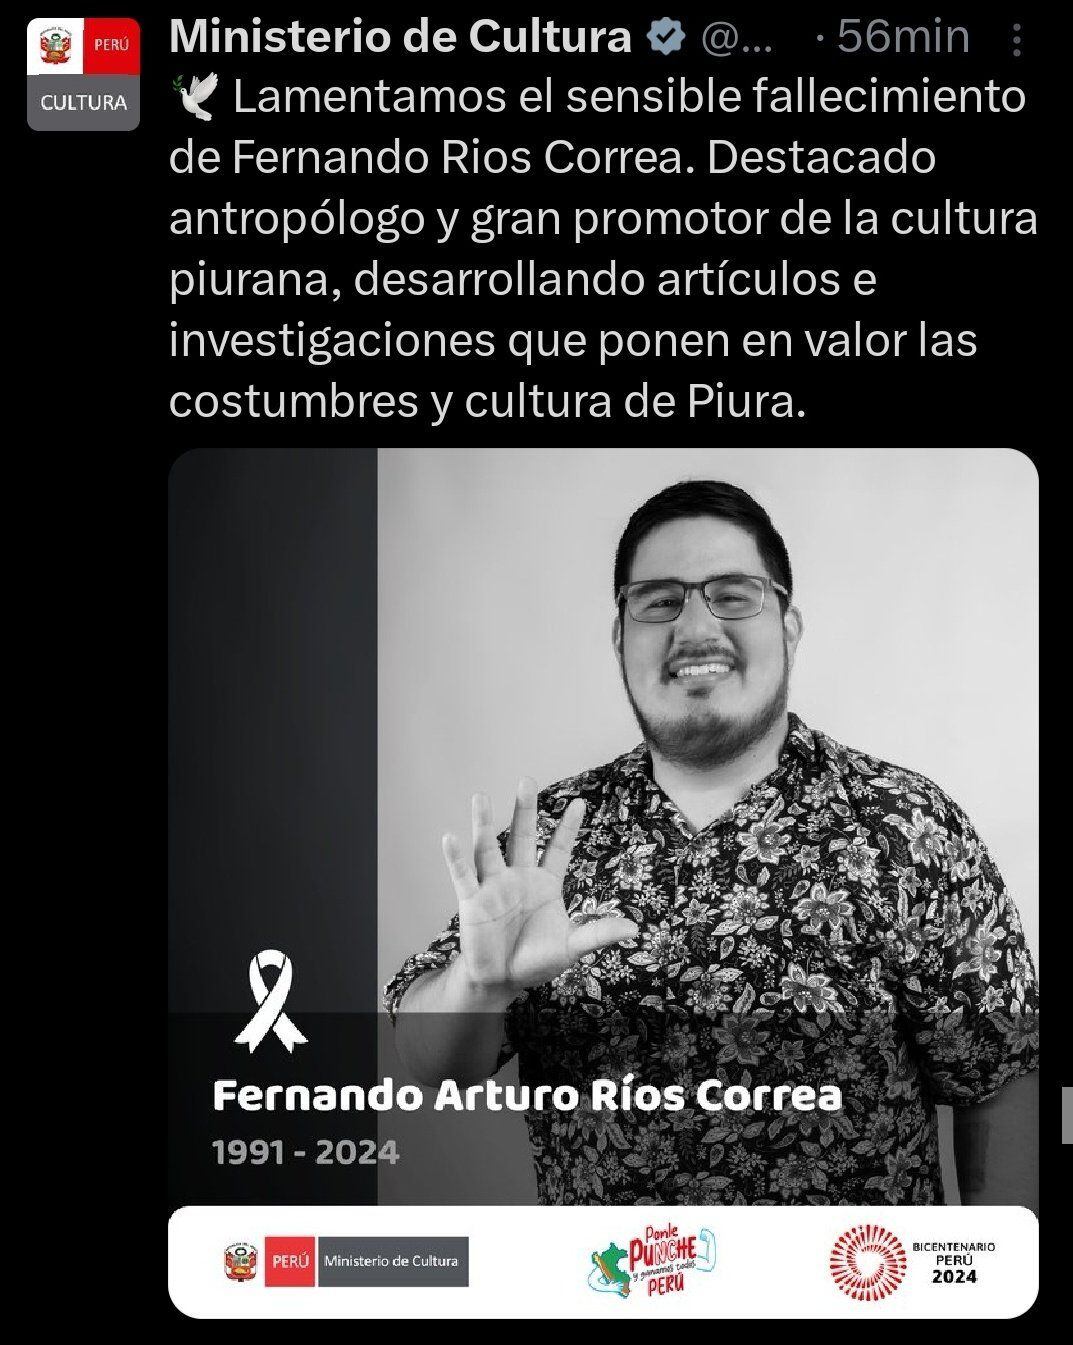 Post del Mincul sobre Fernando Ríos, el cual fue borrado | Foto: Twitter - Captura de pantalla